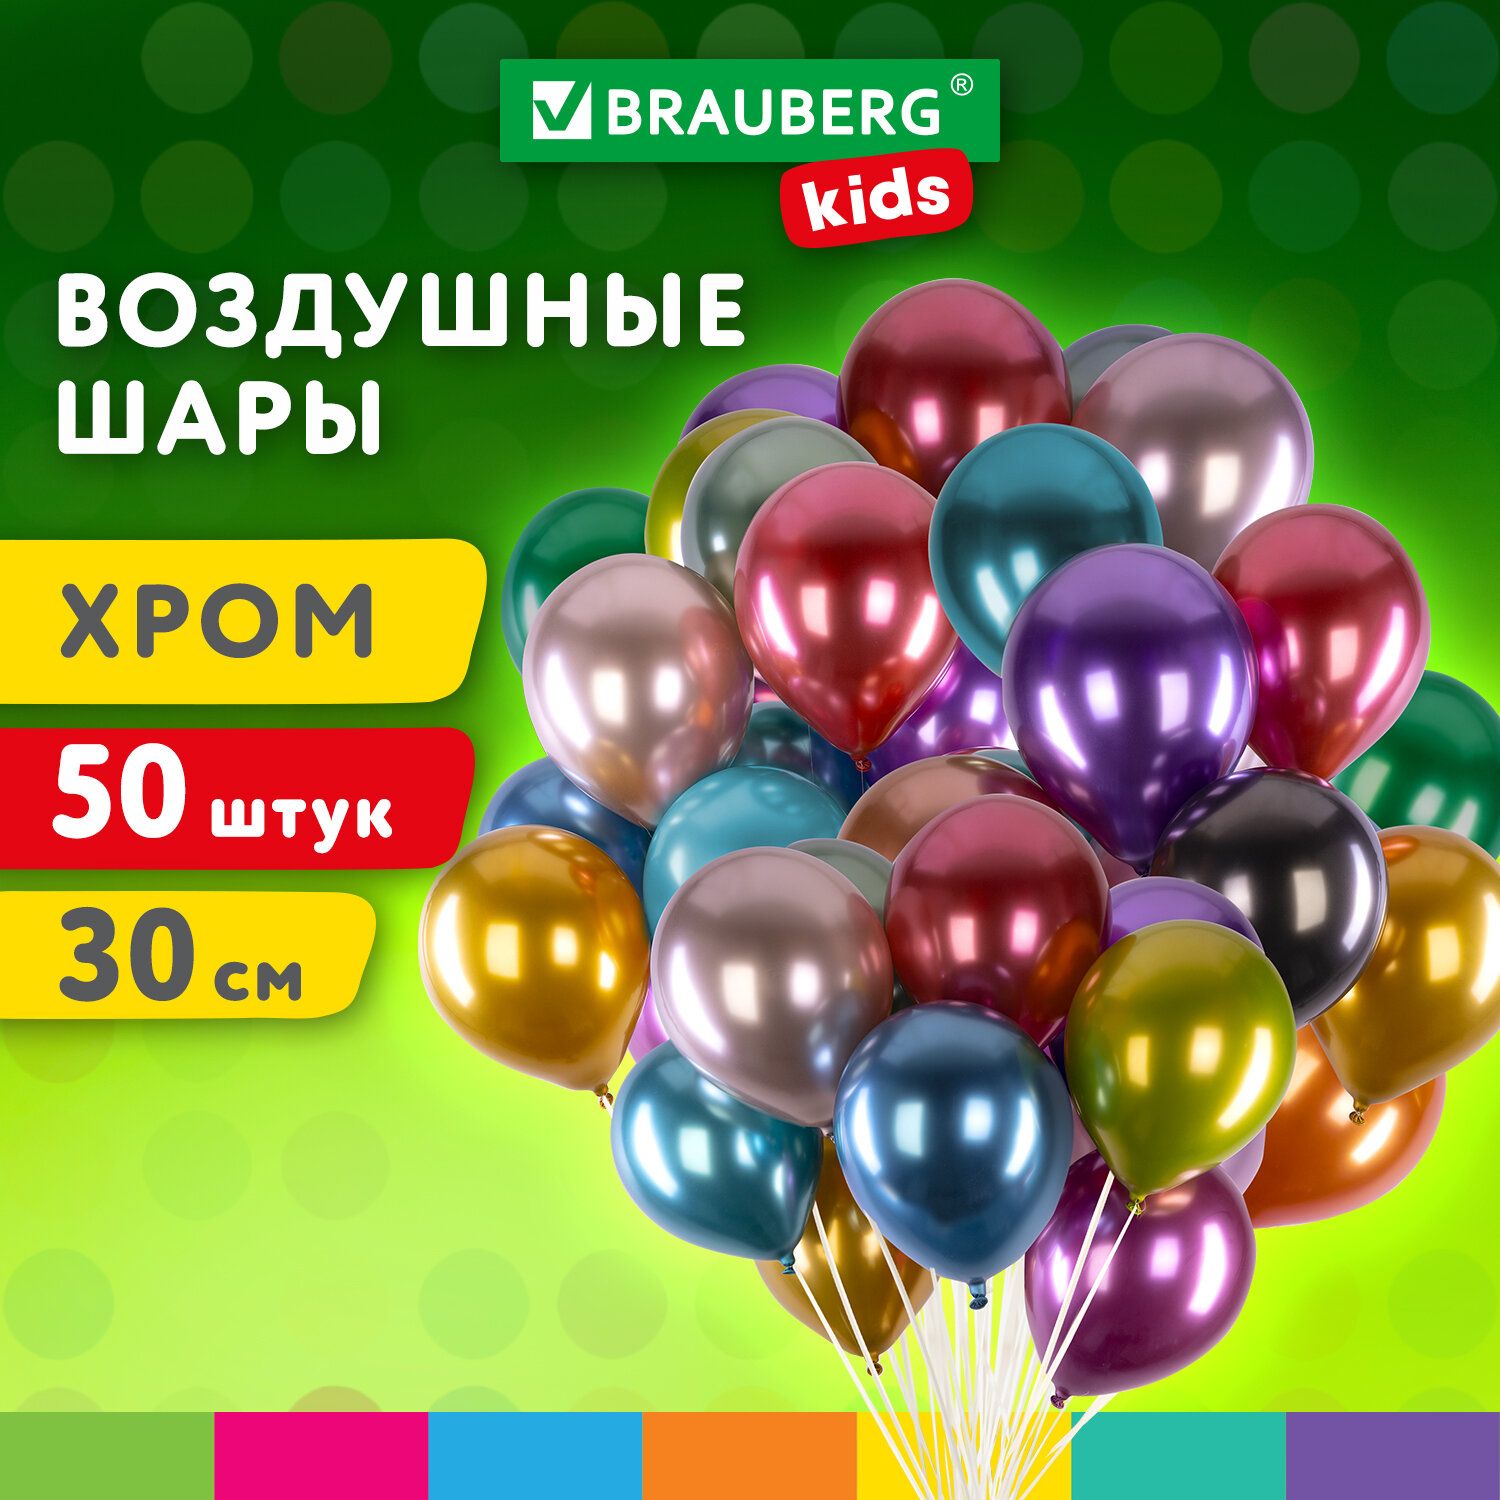 Шарики воздушные Brauberg Kids 591884 набор на день рождения, для фотозоны, 30 см, 50 штук воздушные шарики belbal 14 улыбка 50 штук